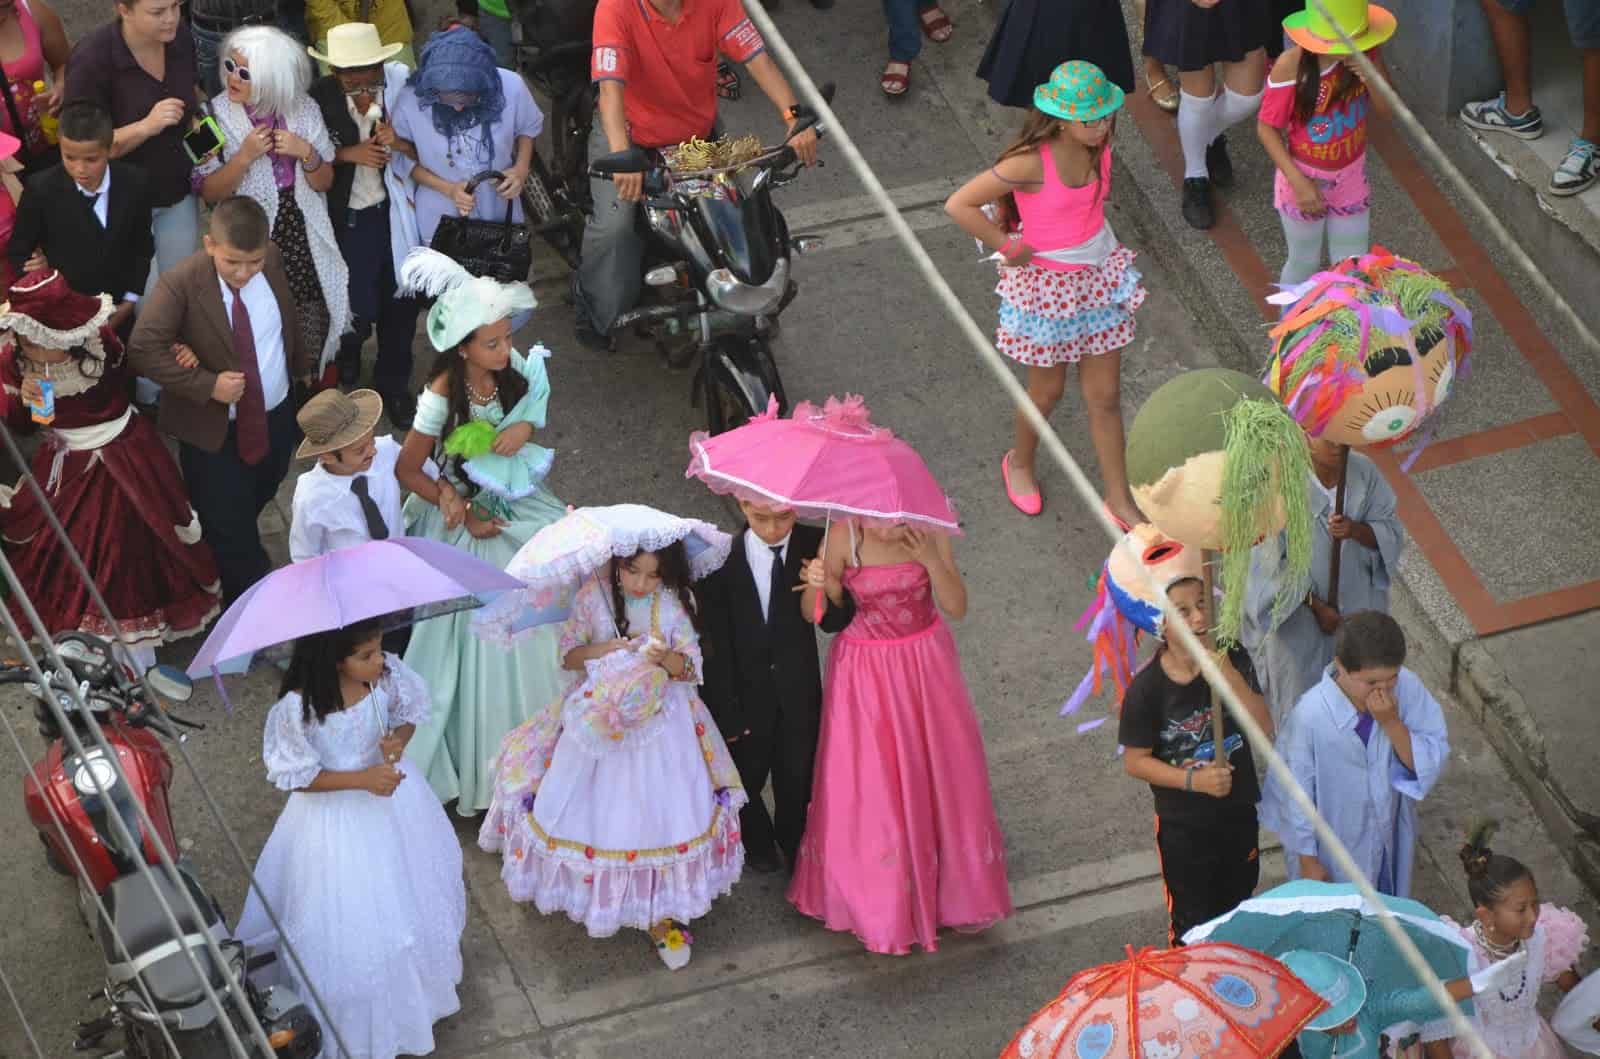 Carnaval de Negros y Blancos at the parade in Belén de Umbría, Risaralda, Colombia